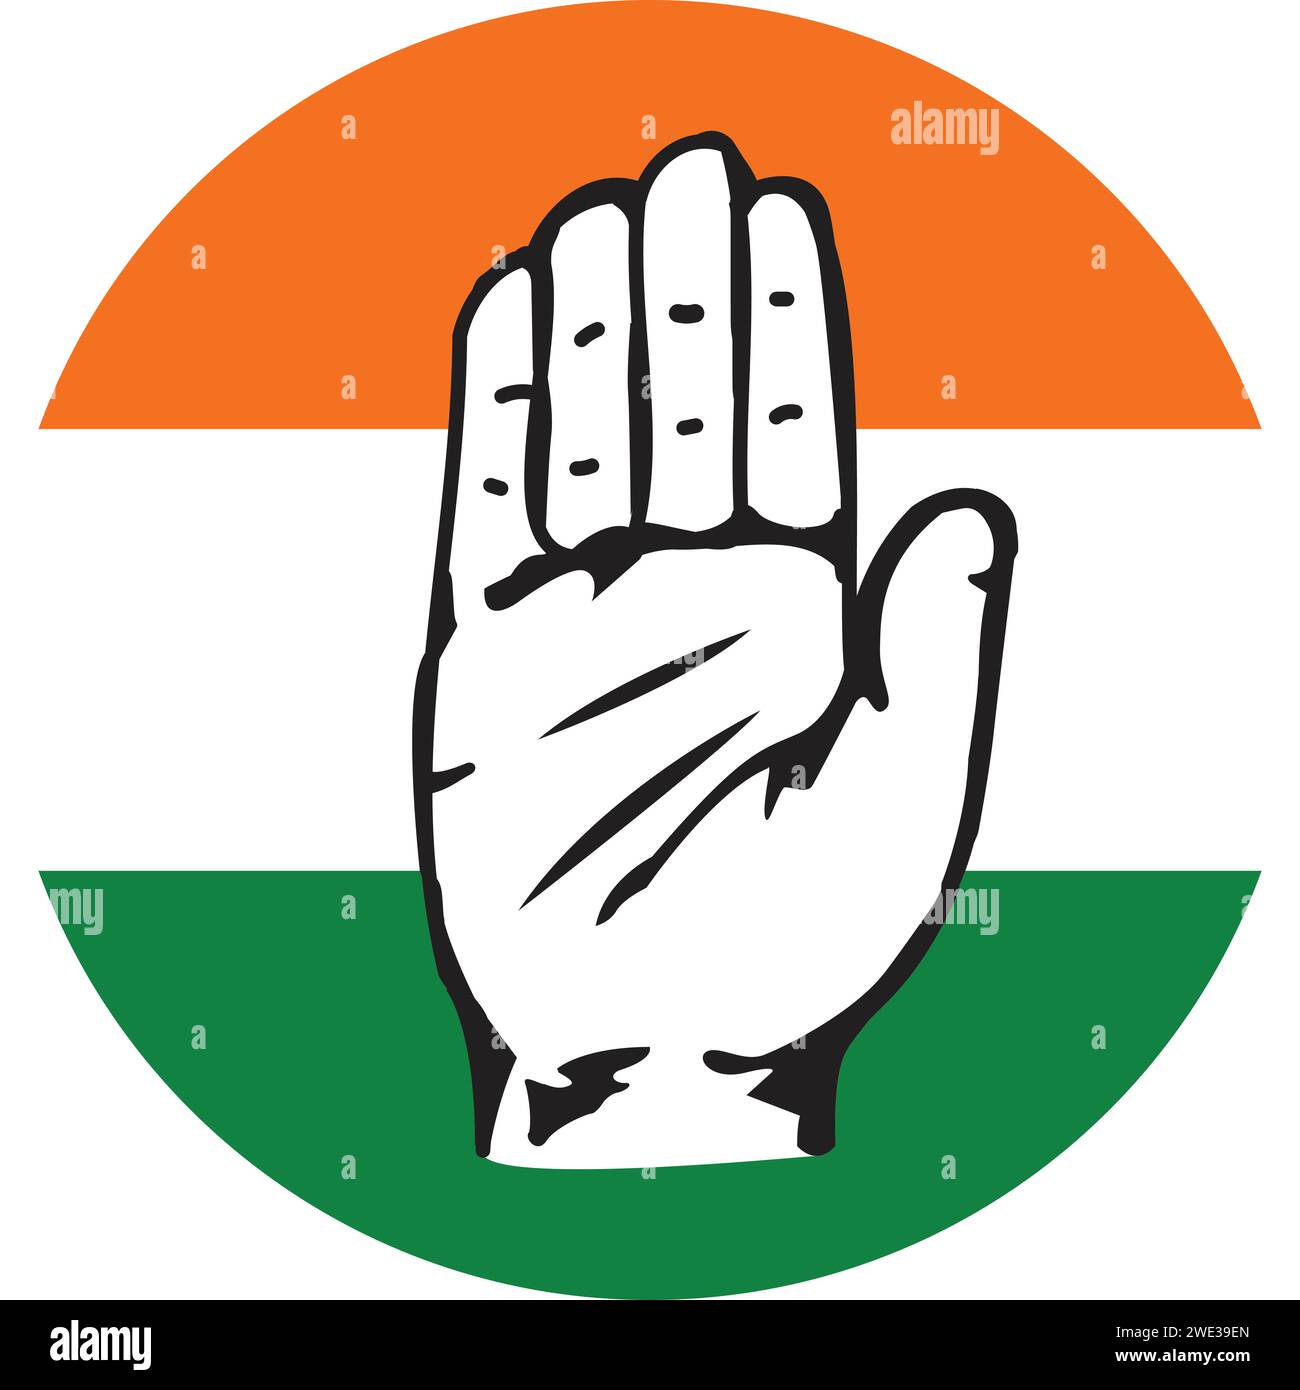 INC-Partei, indische Nationalkongresspartei-Flagge, Parteizeichen der Partei, Symbol der Kongresspartei Stock Vektor